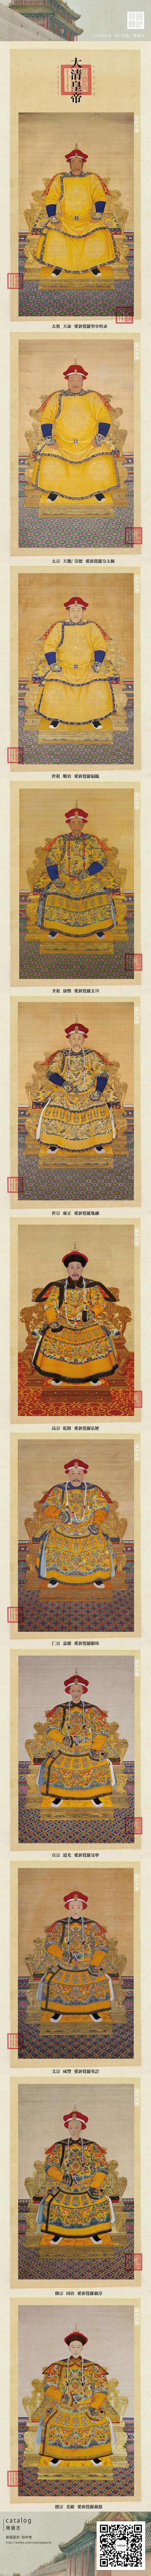 【大清皇帝肖像圖】
一部帝國的盛衰史。（...